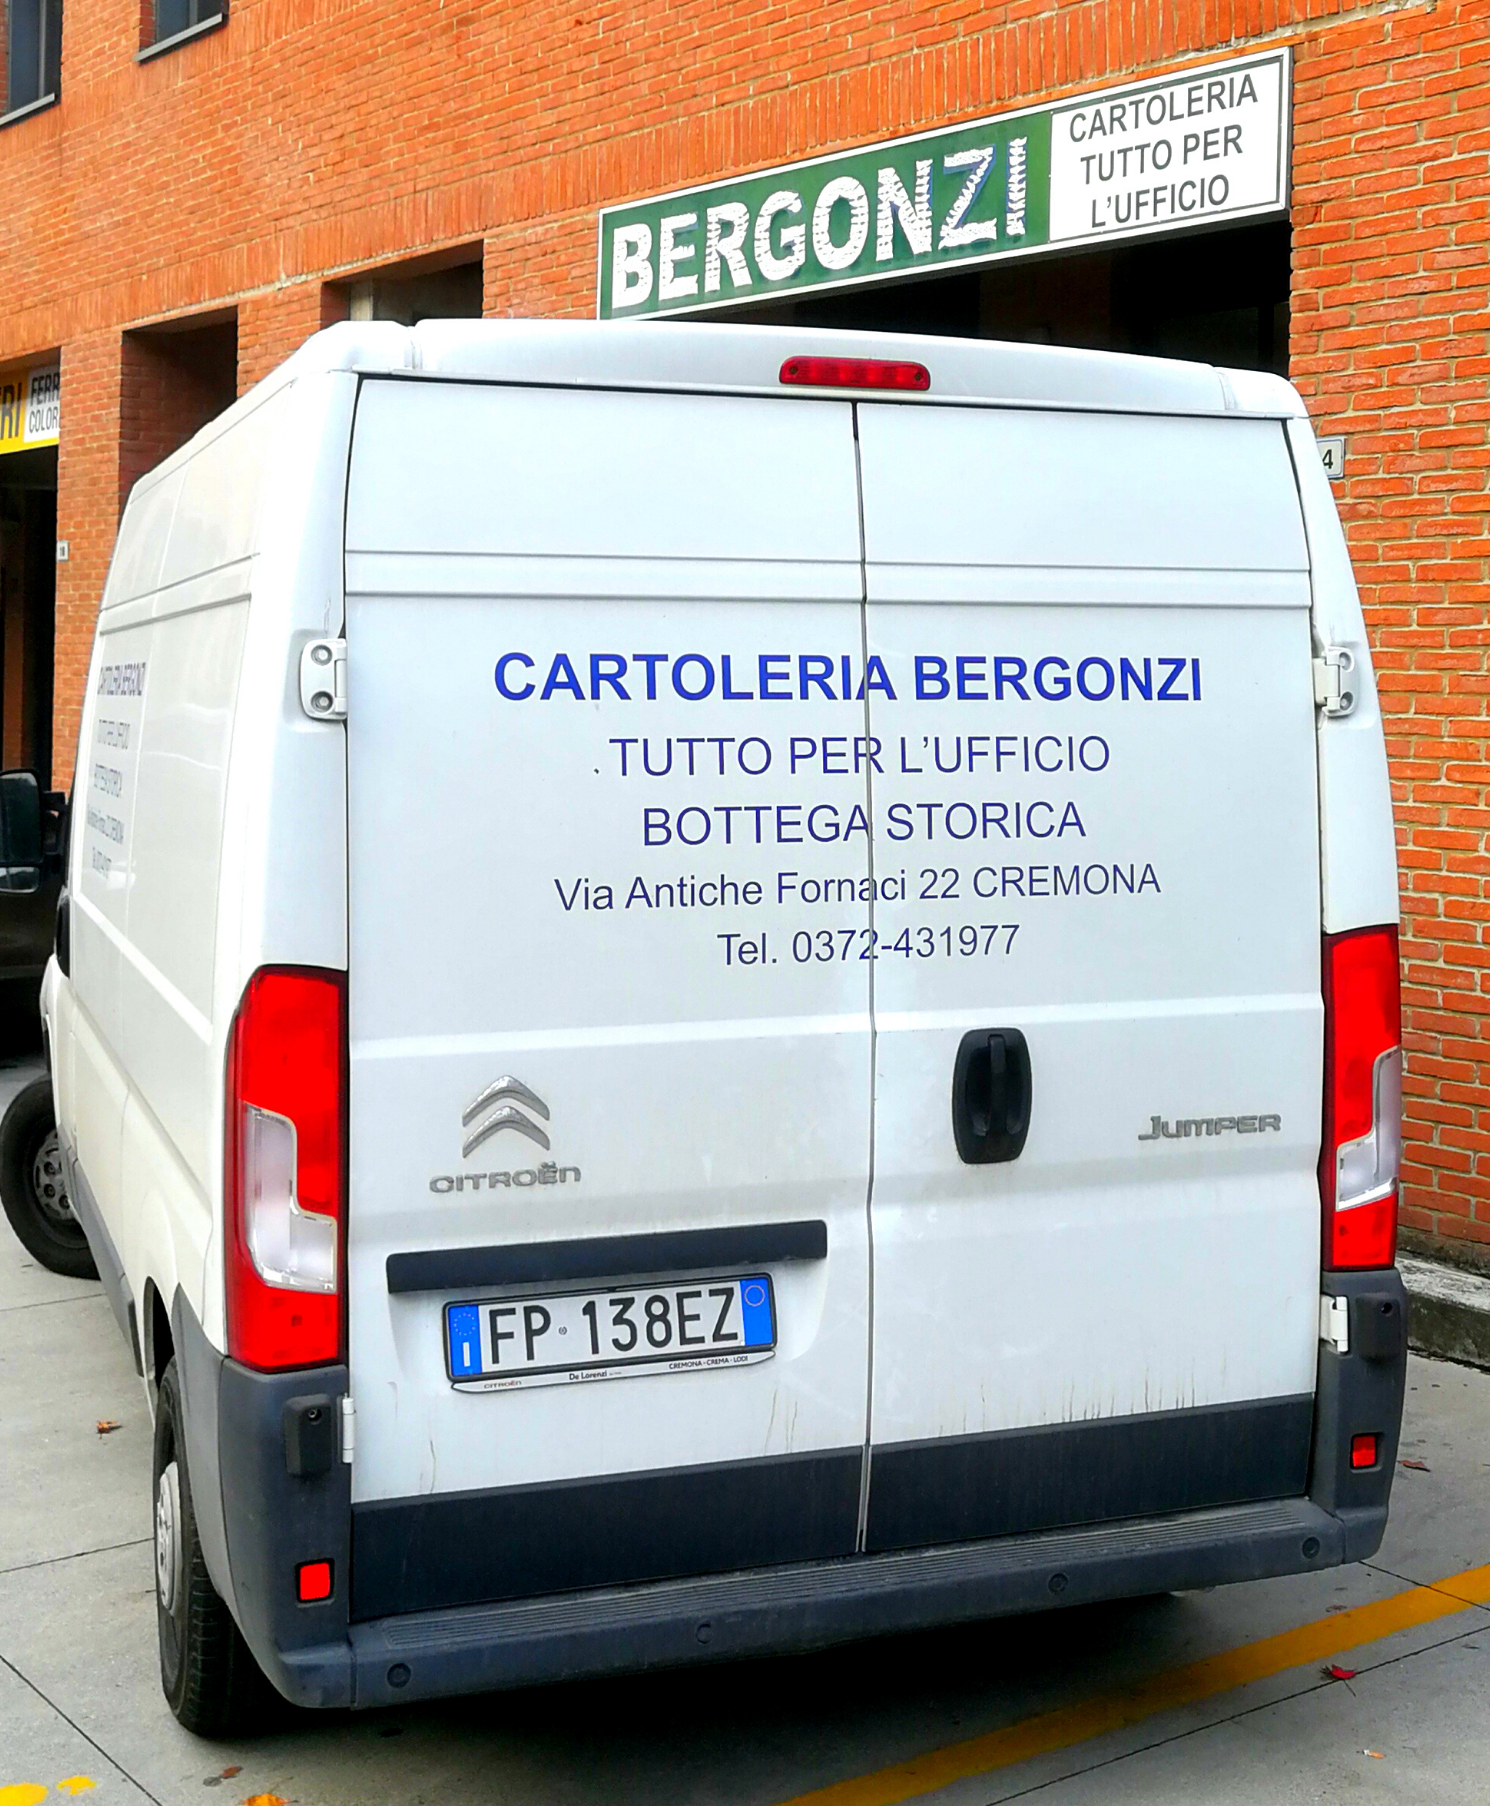 Consegna gratuita Cremona Bergonzi Ufficio 1 (1)